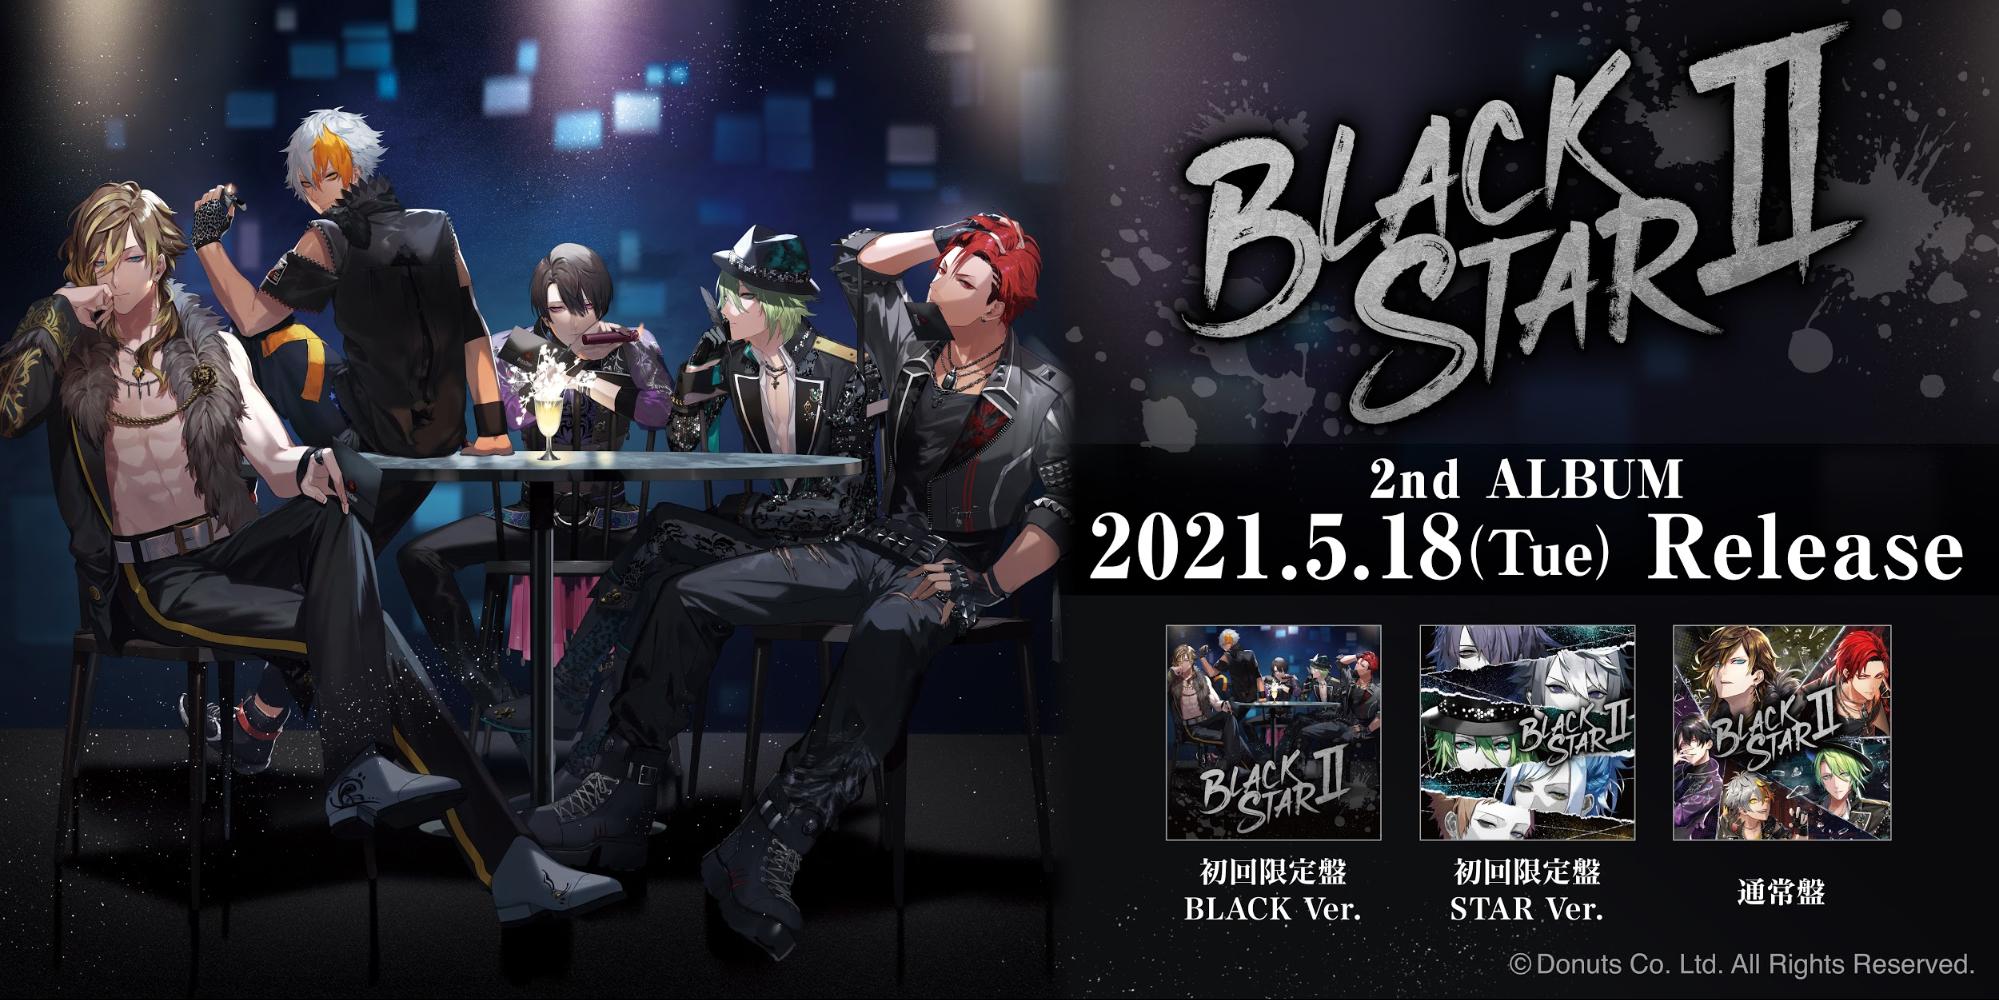 ブラックスター Theater Starless 2ndアルバム Blackstar と1stライブ Black Live Blu Ray Dvd発売決定 2 28live速報レポートも掲載 Donutsのプレスリリース